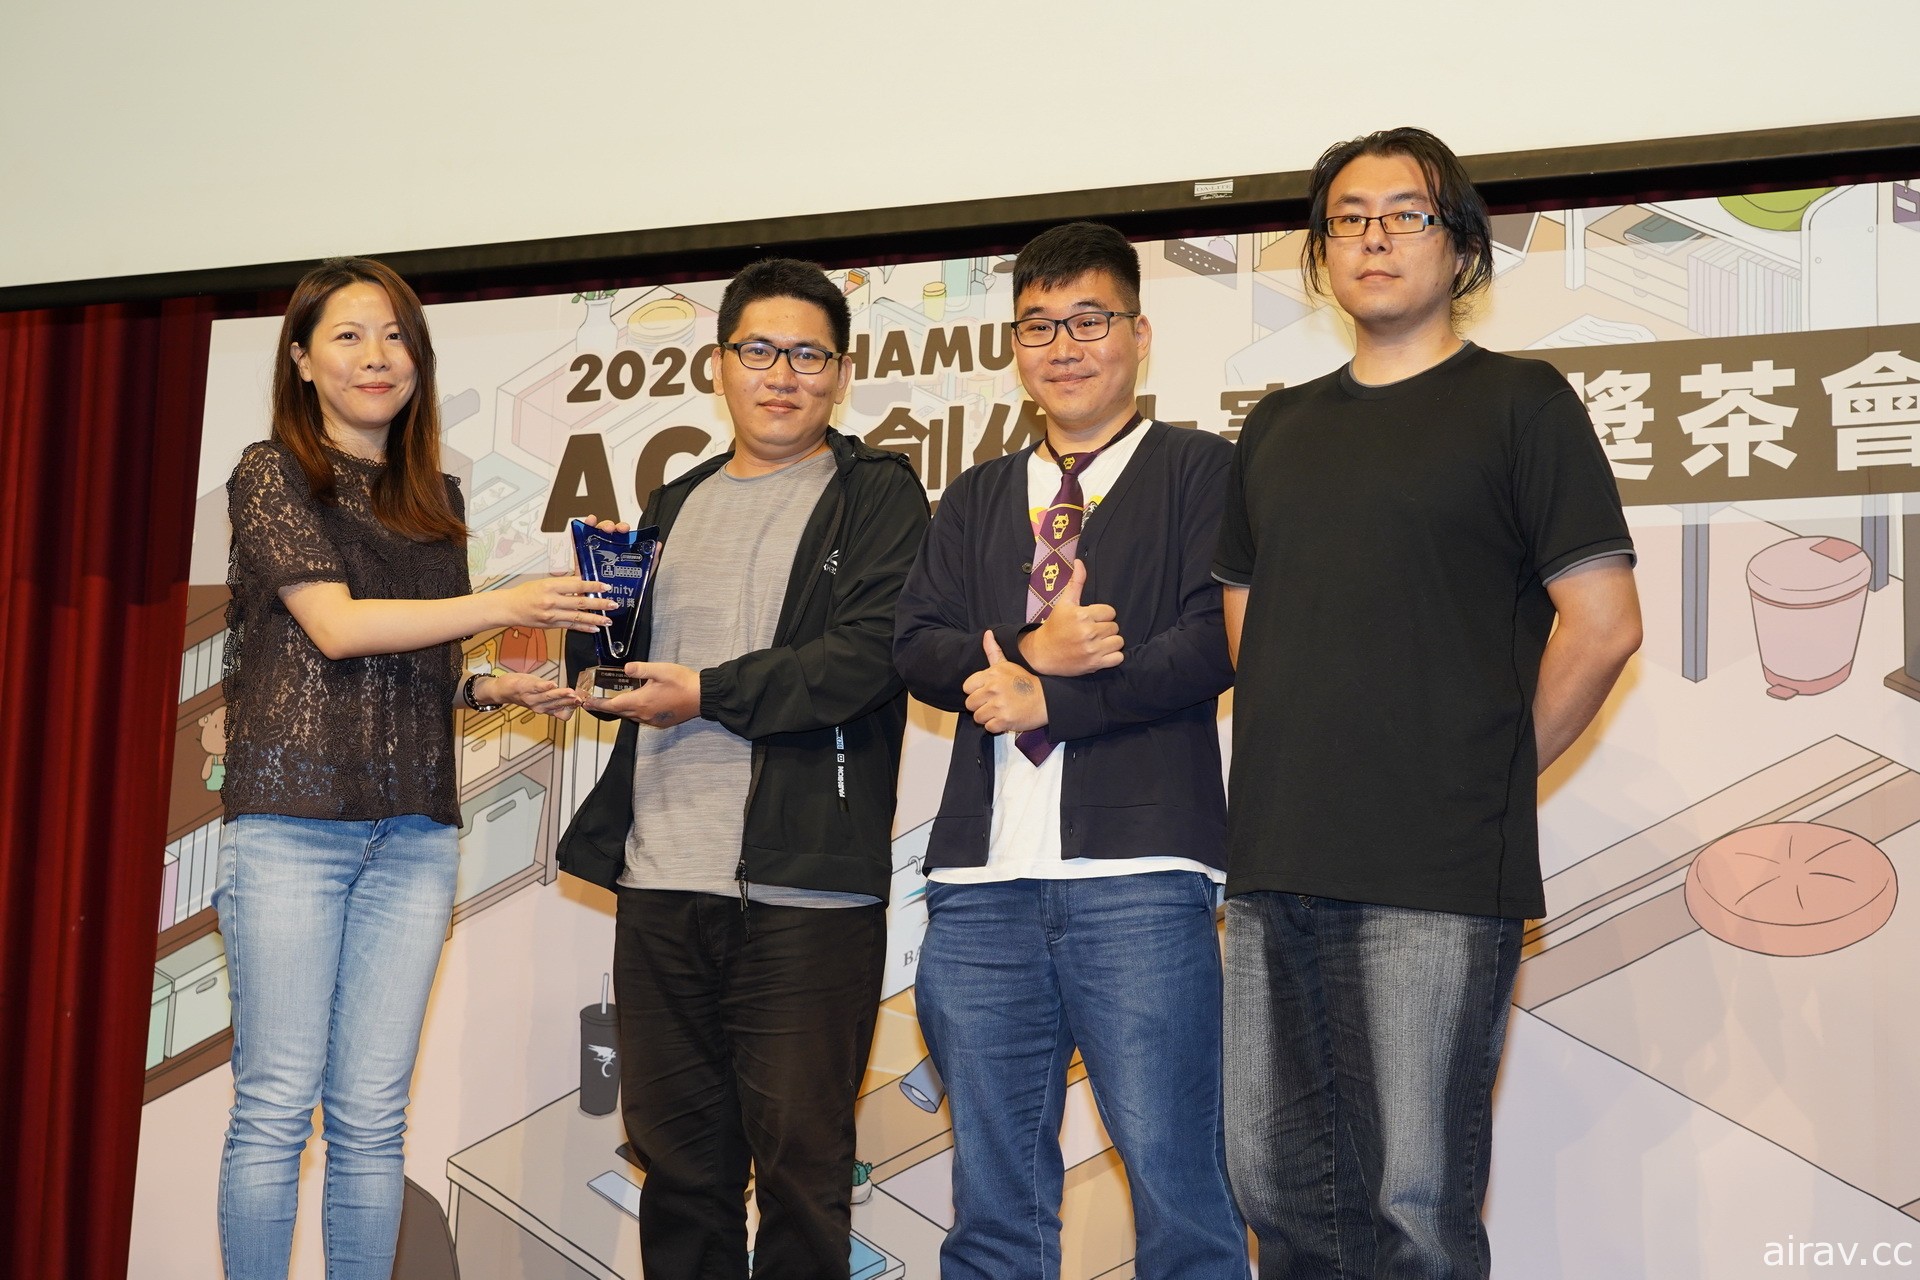 巴哈姆特 2020 ACG 創作大賽「遊戲組」揭曉得獎名單 《文字遊戲》獲得金賞